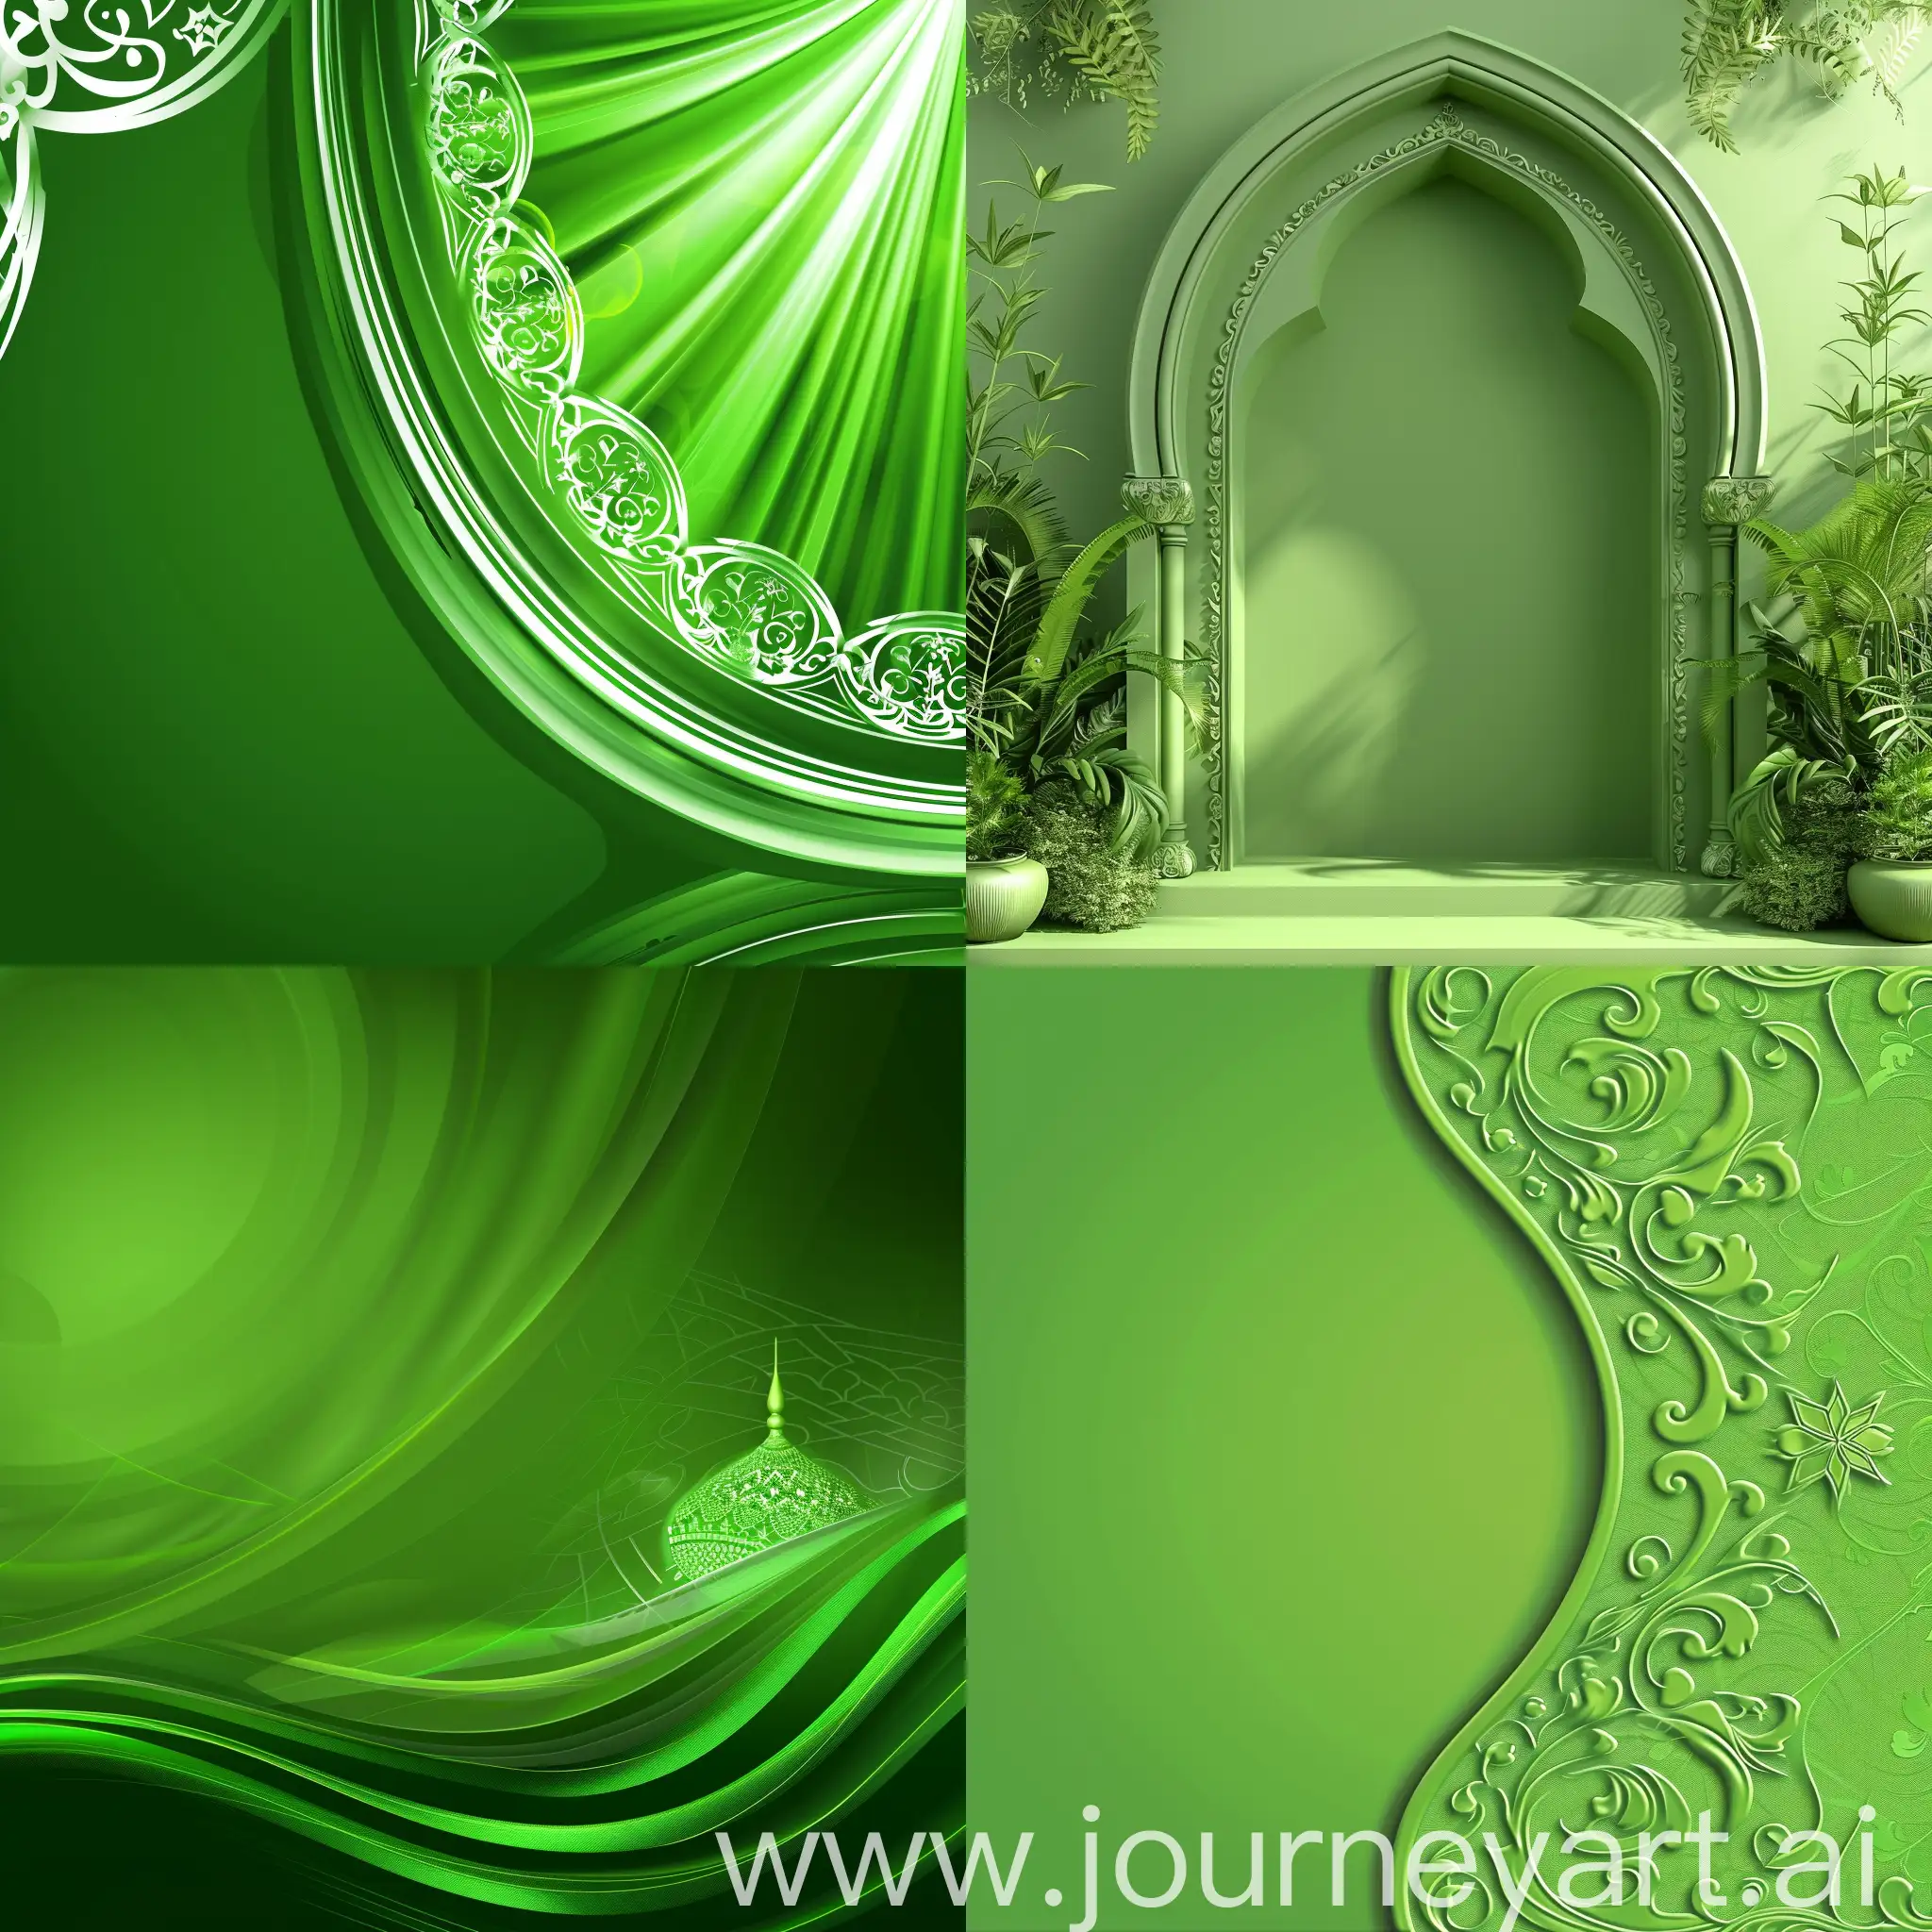 Elegant-MahmoudismInspired-Green-Modern-Background